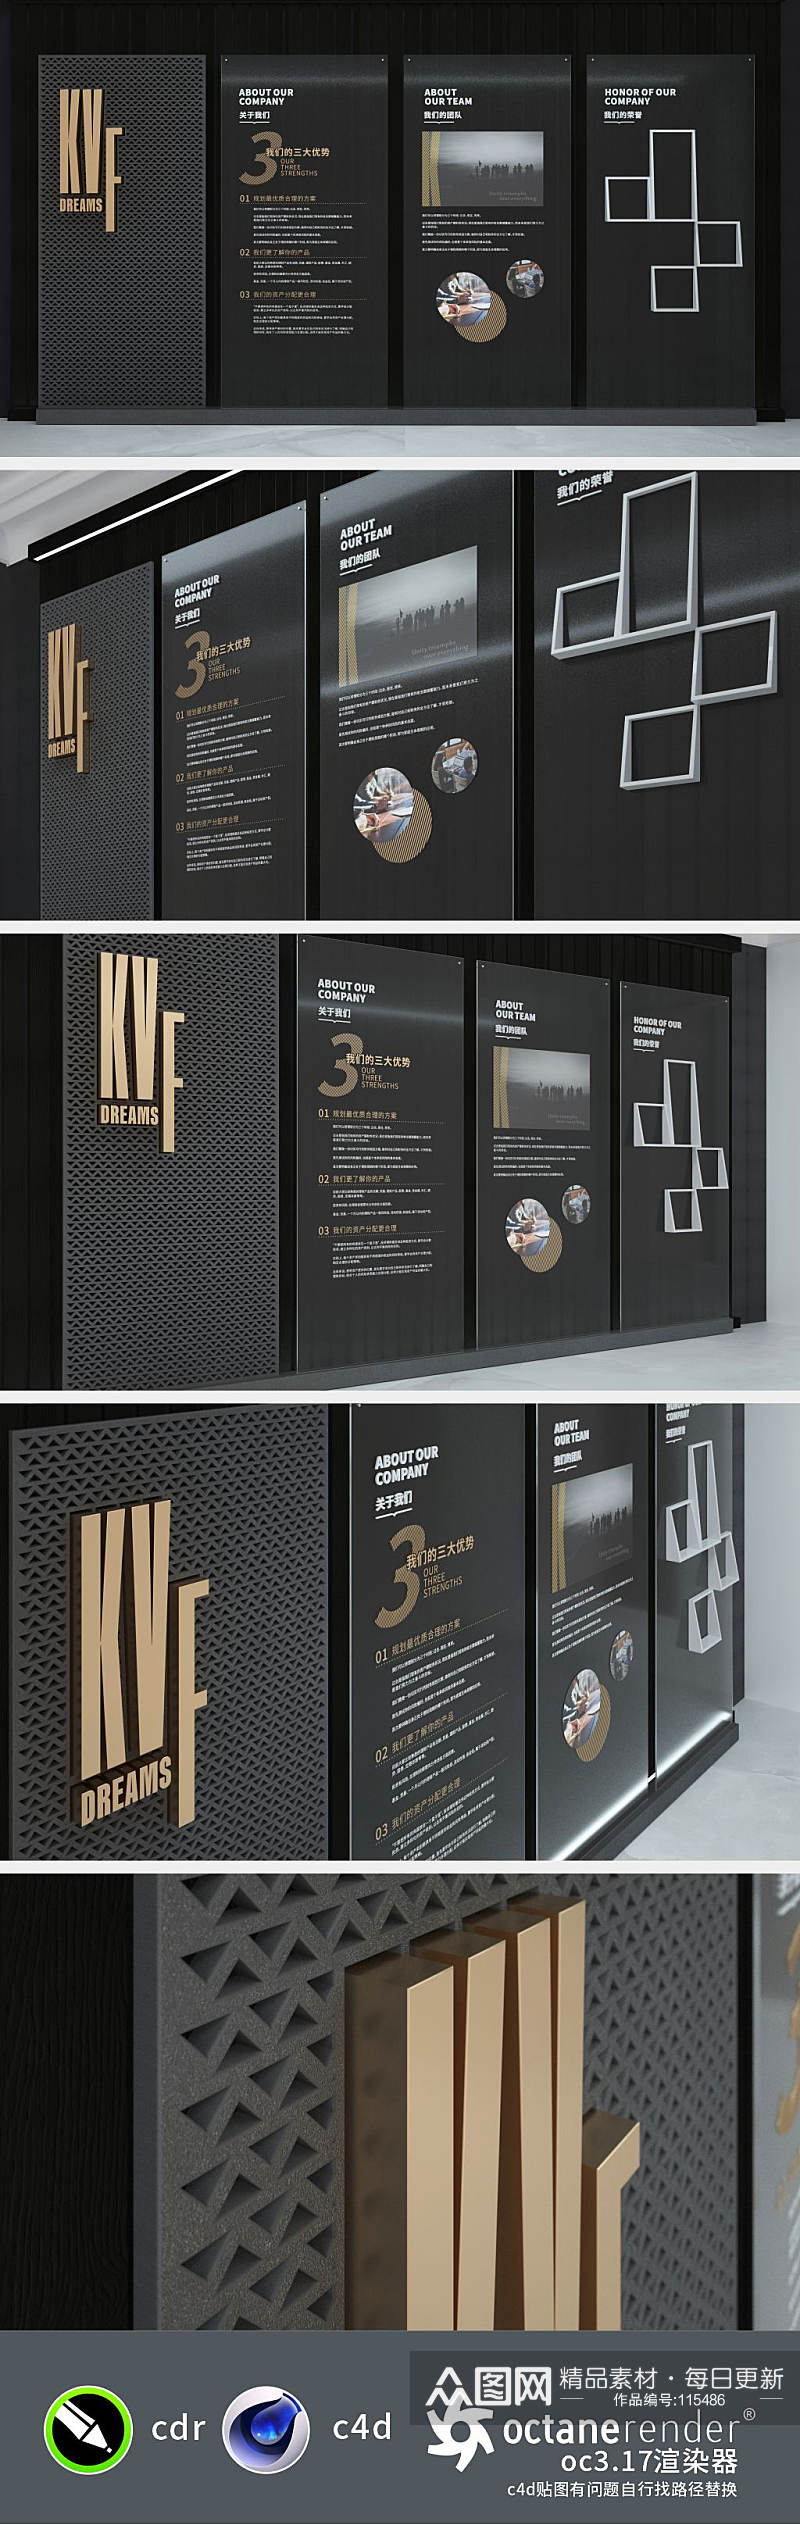 黑色简约企业文化墙创新式设计图片素材